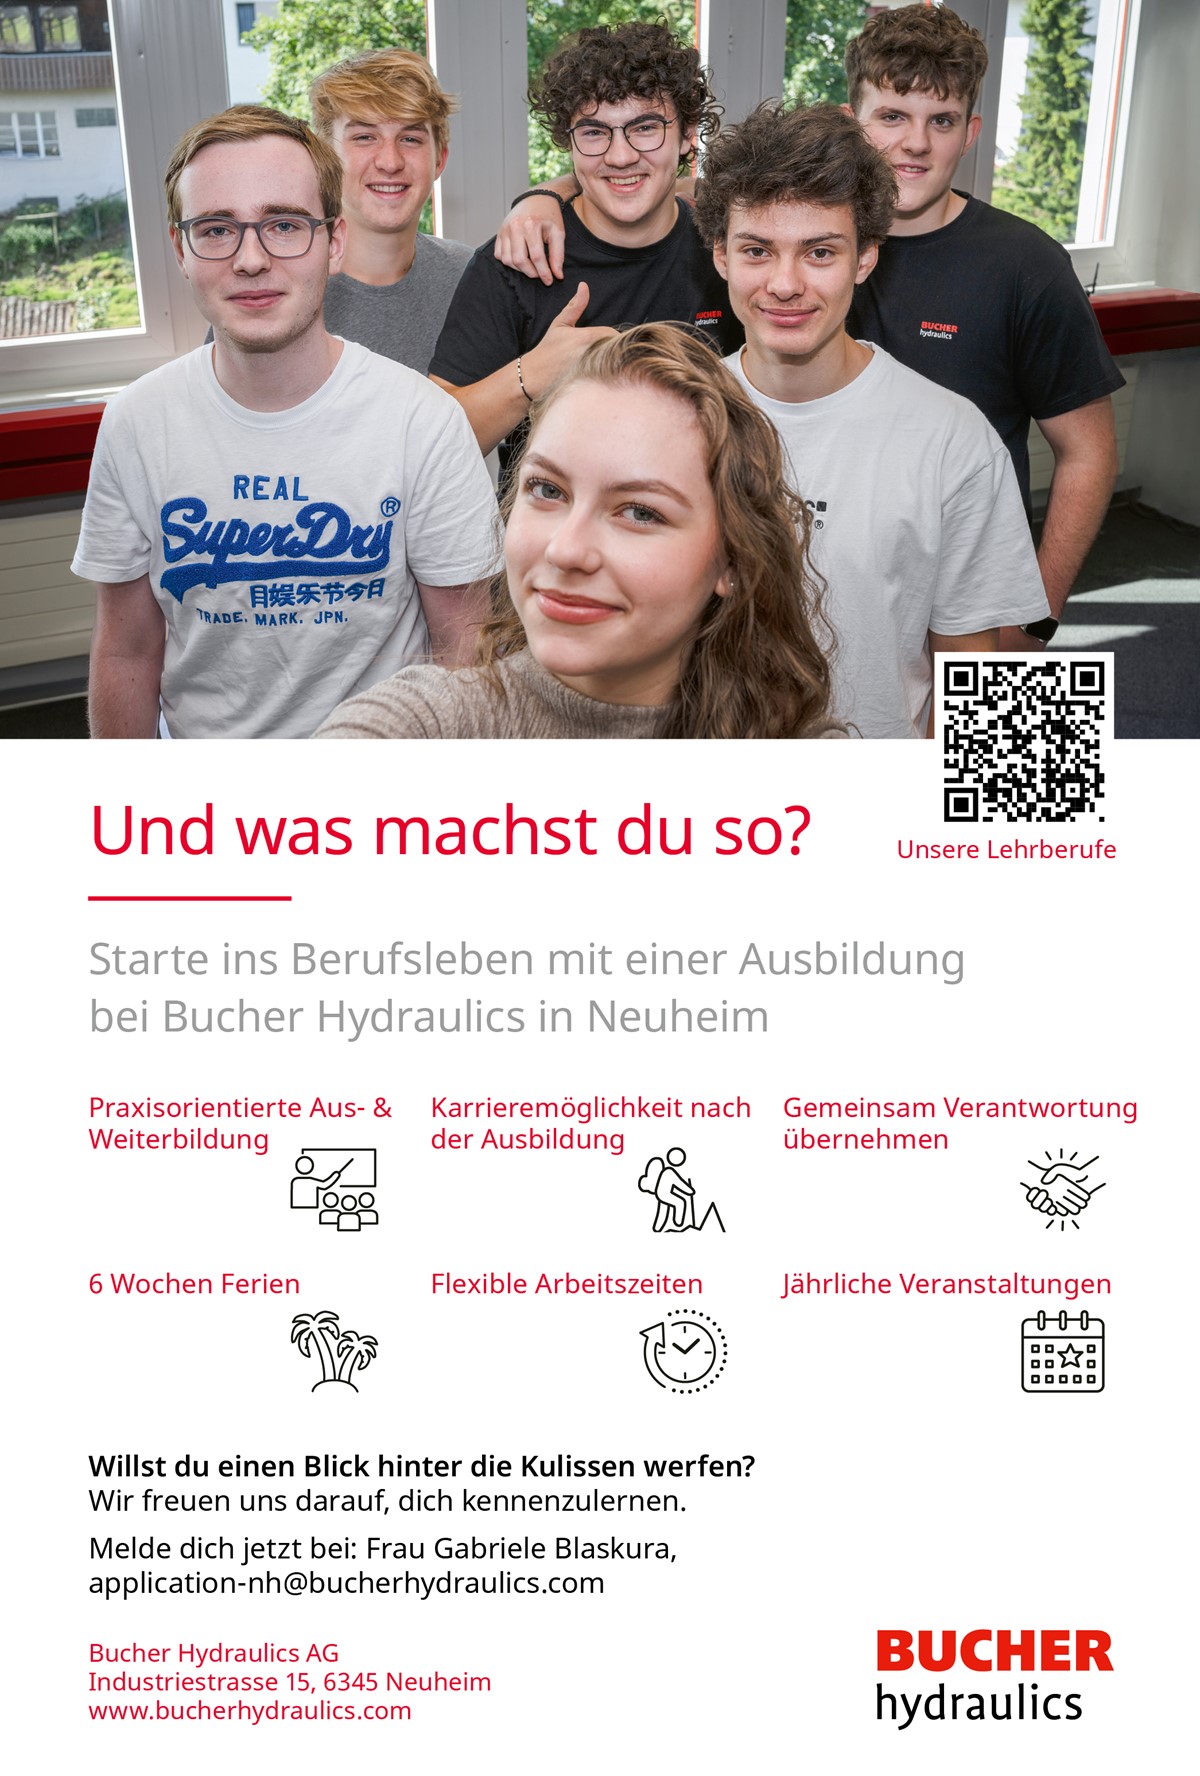 Bucher Hydraulics AG